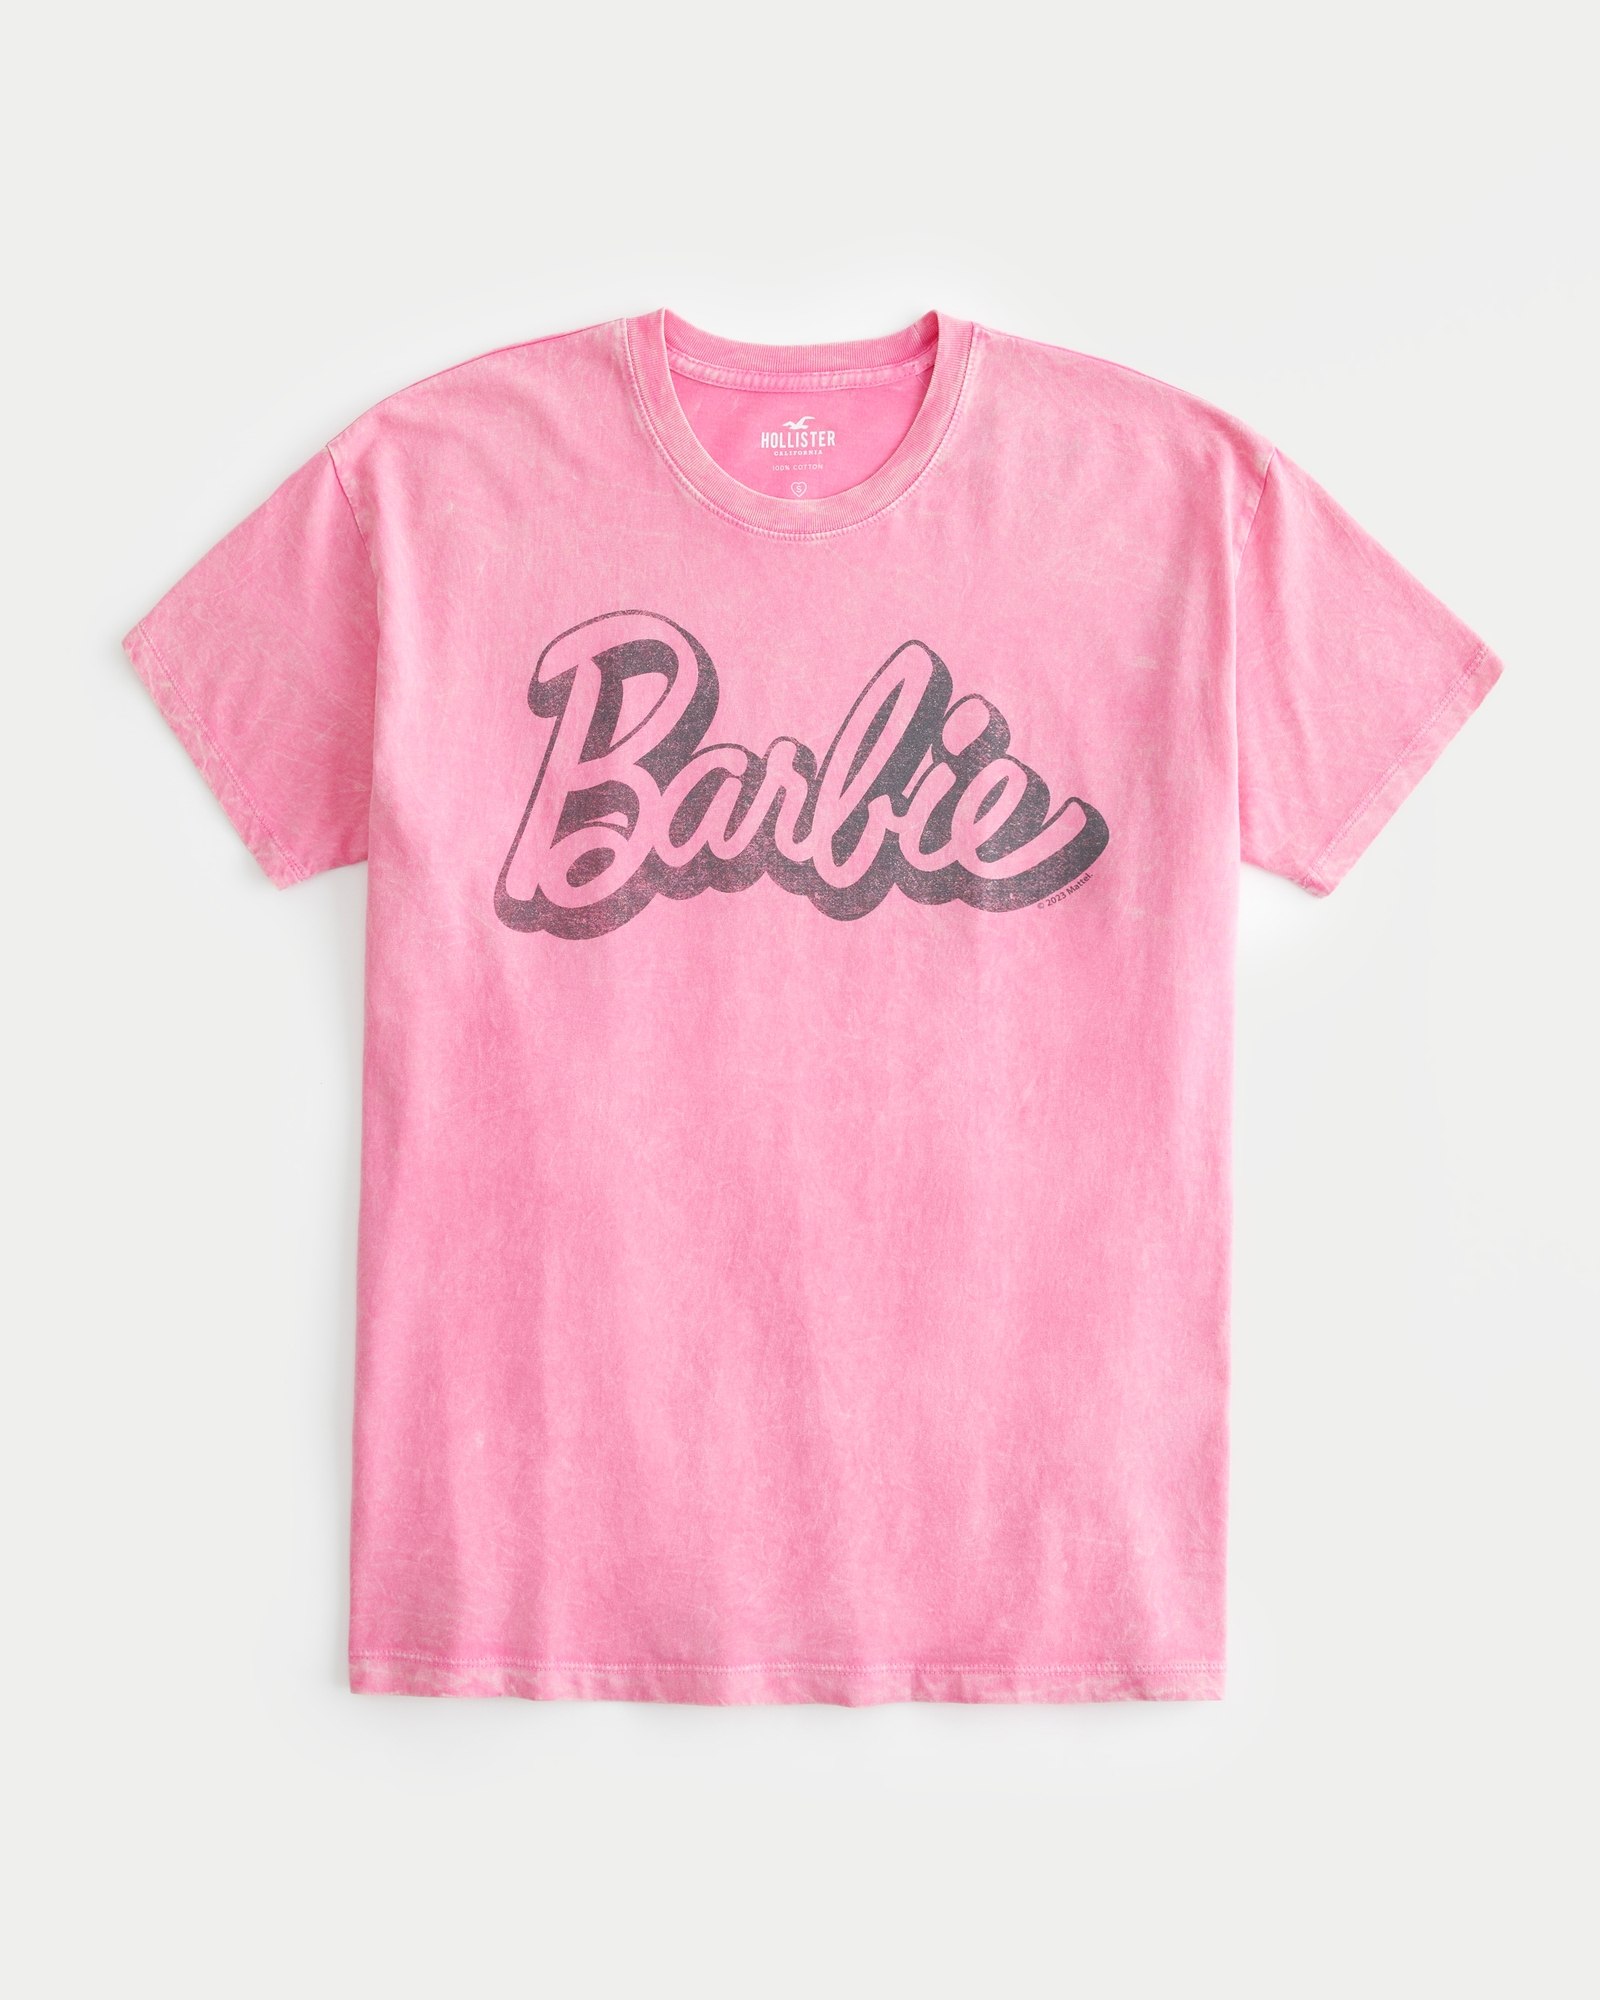 Women's Barbie Character Short Sleeve Pajama Sleepshirt